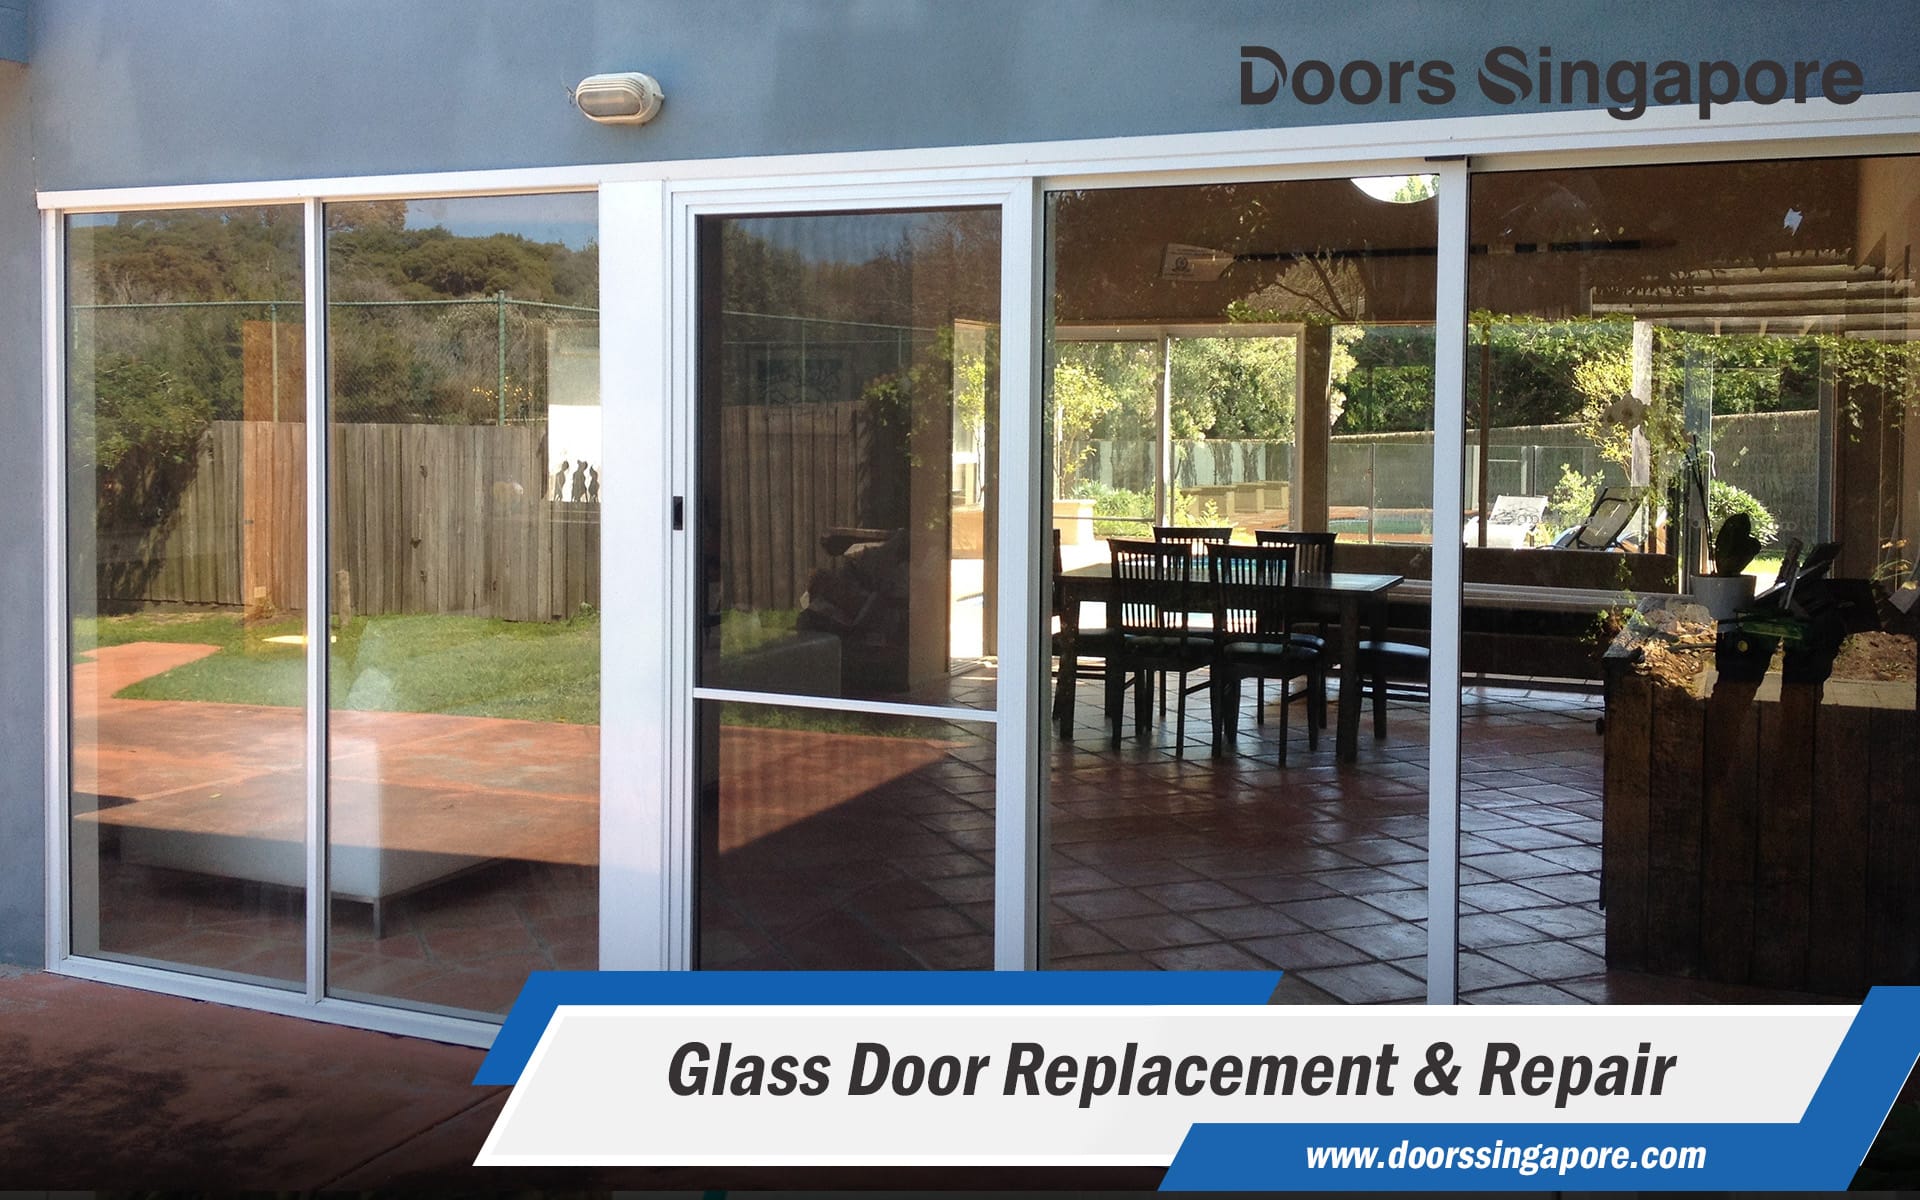 Glass Door Replacement & Repair